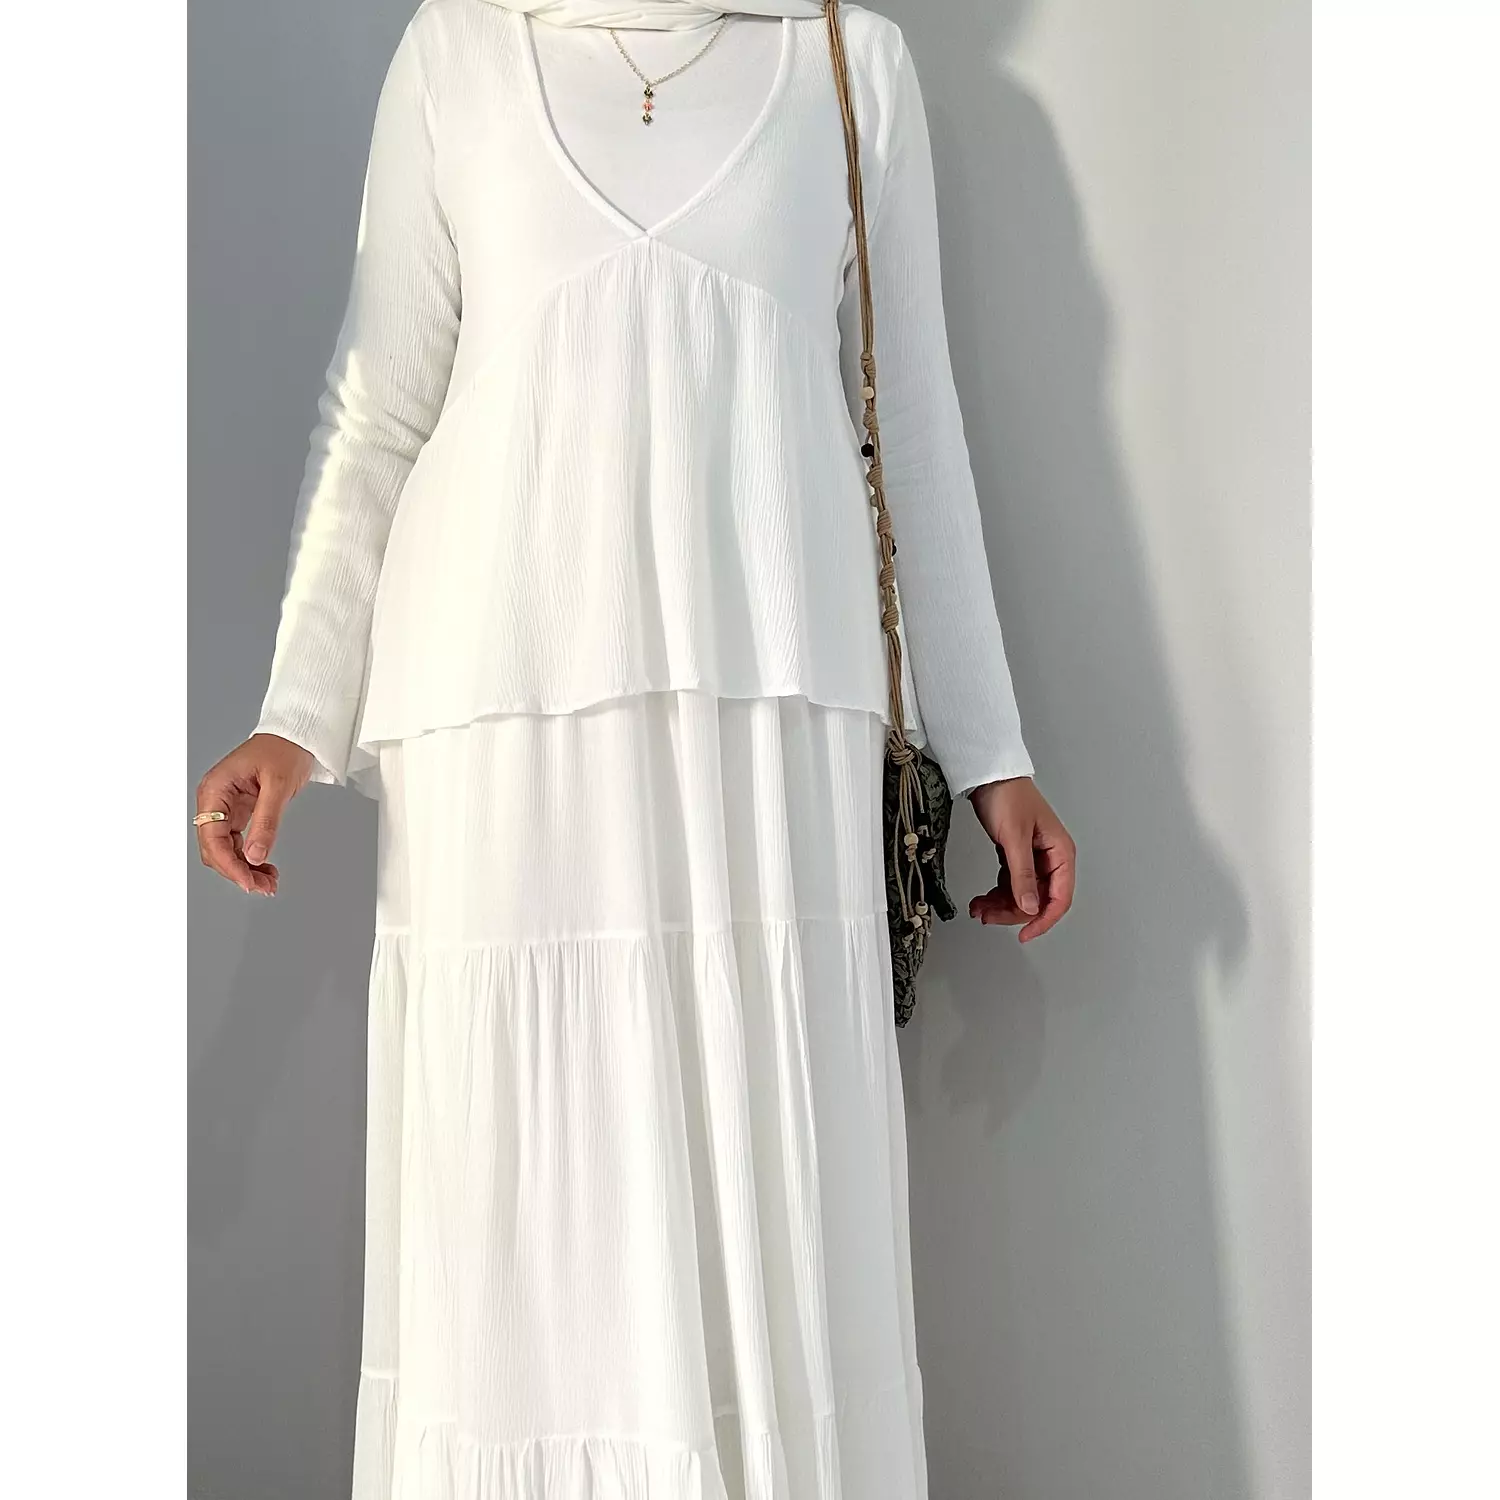 White v-neck cotton blouse  hover image